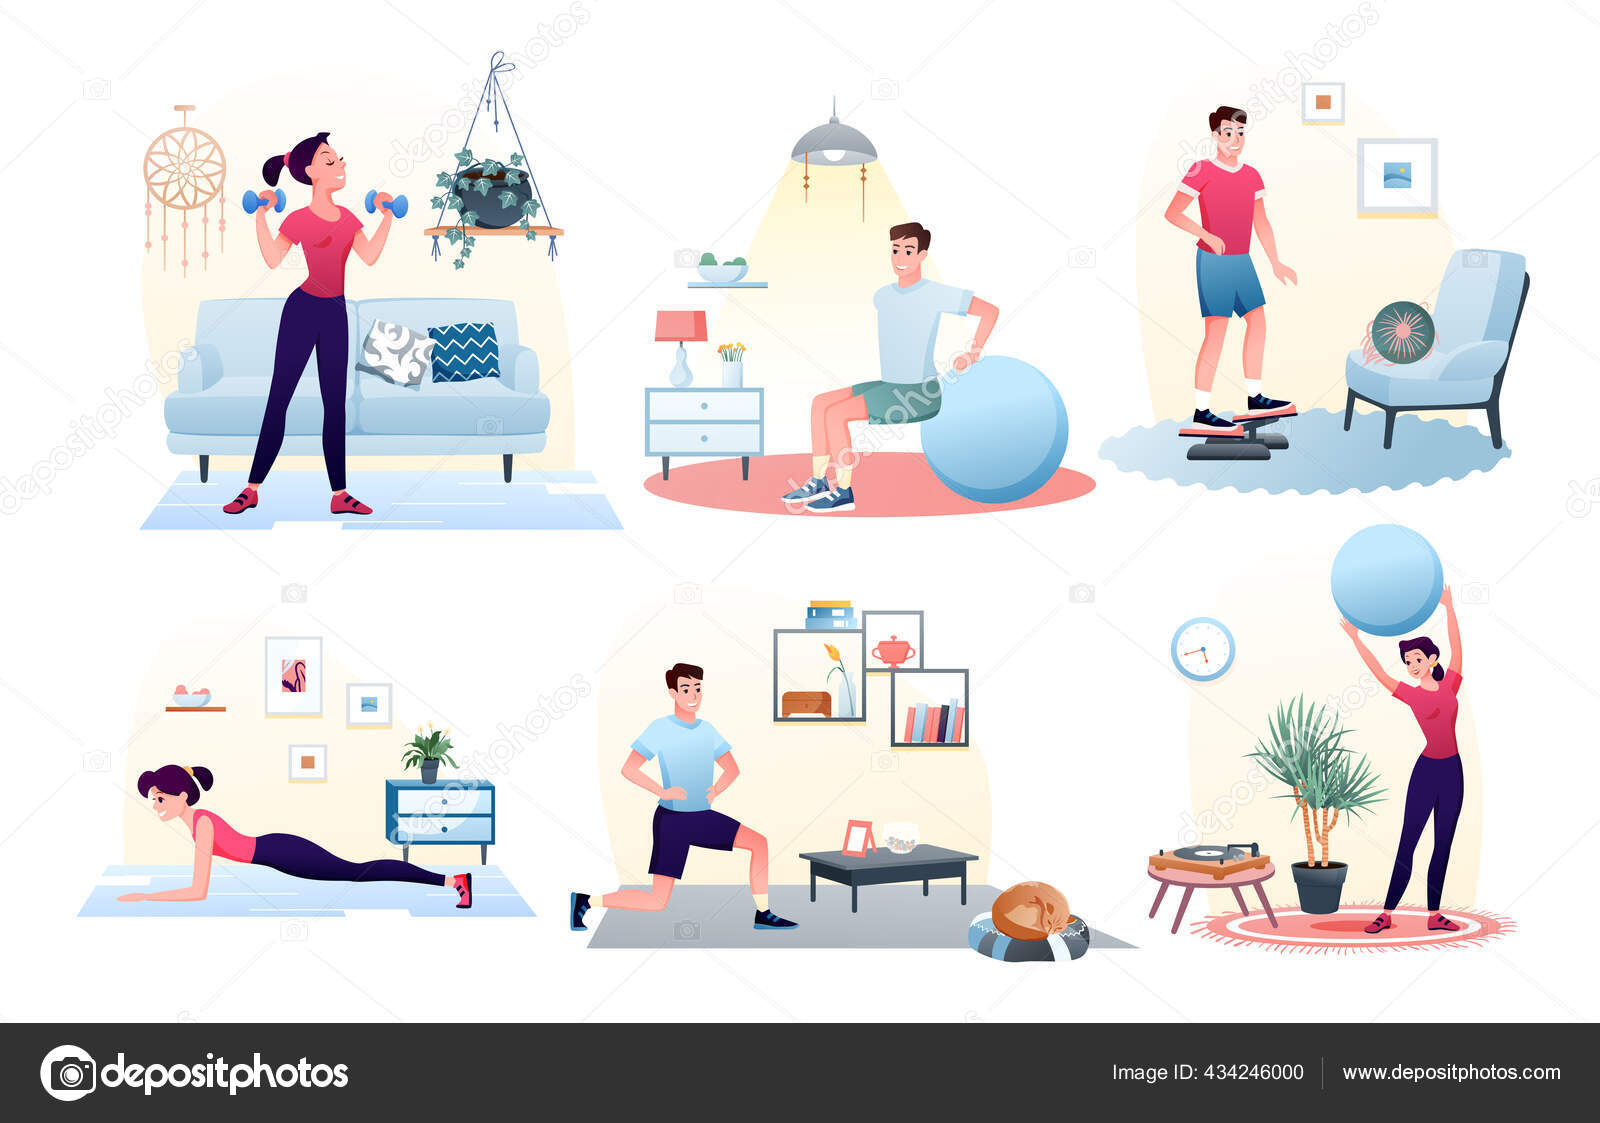 https://st2.depositphotos.com/12889260/43424/v/1600/depositphotos_434246000-stock-illustration-sport-exercise-at-home-set.jpg